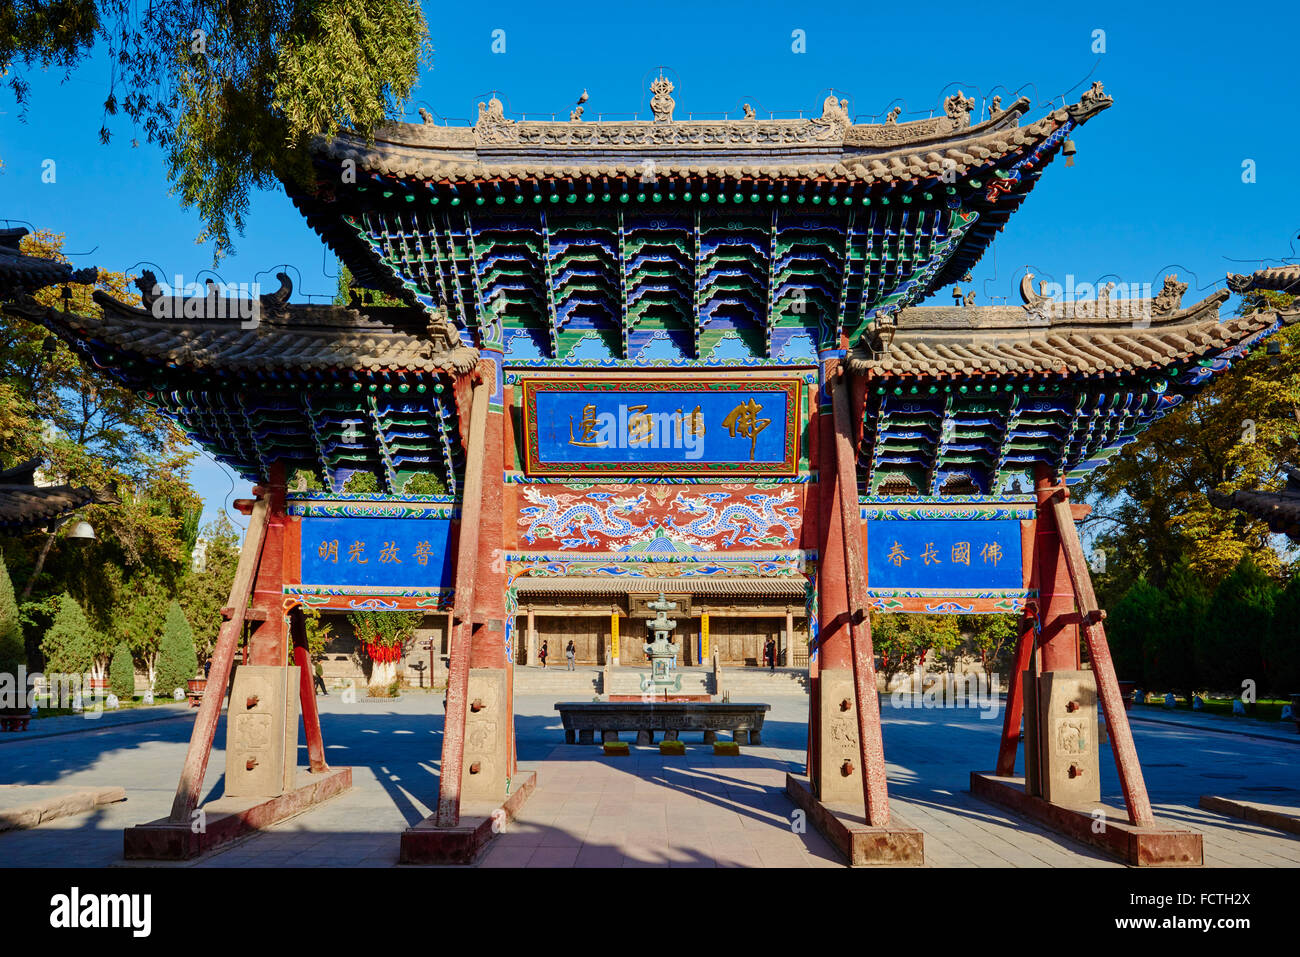 China, Gansu Province, Zhangye, the Great Buddha temple Stock Photo